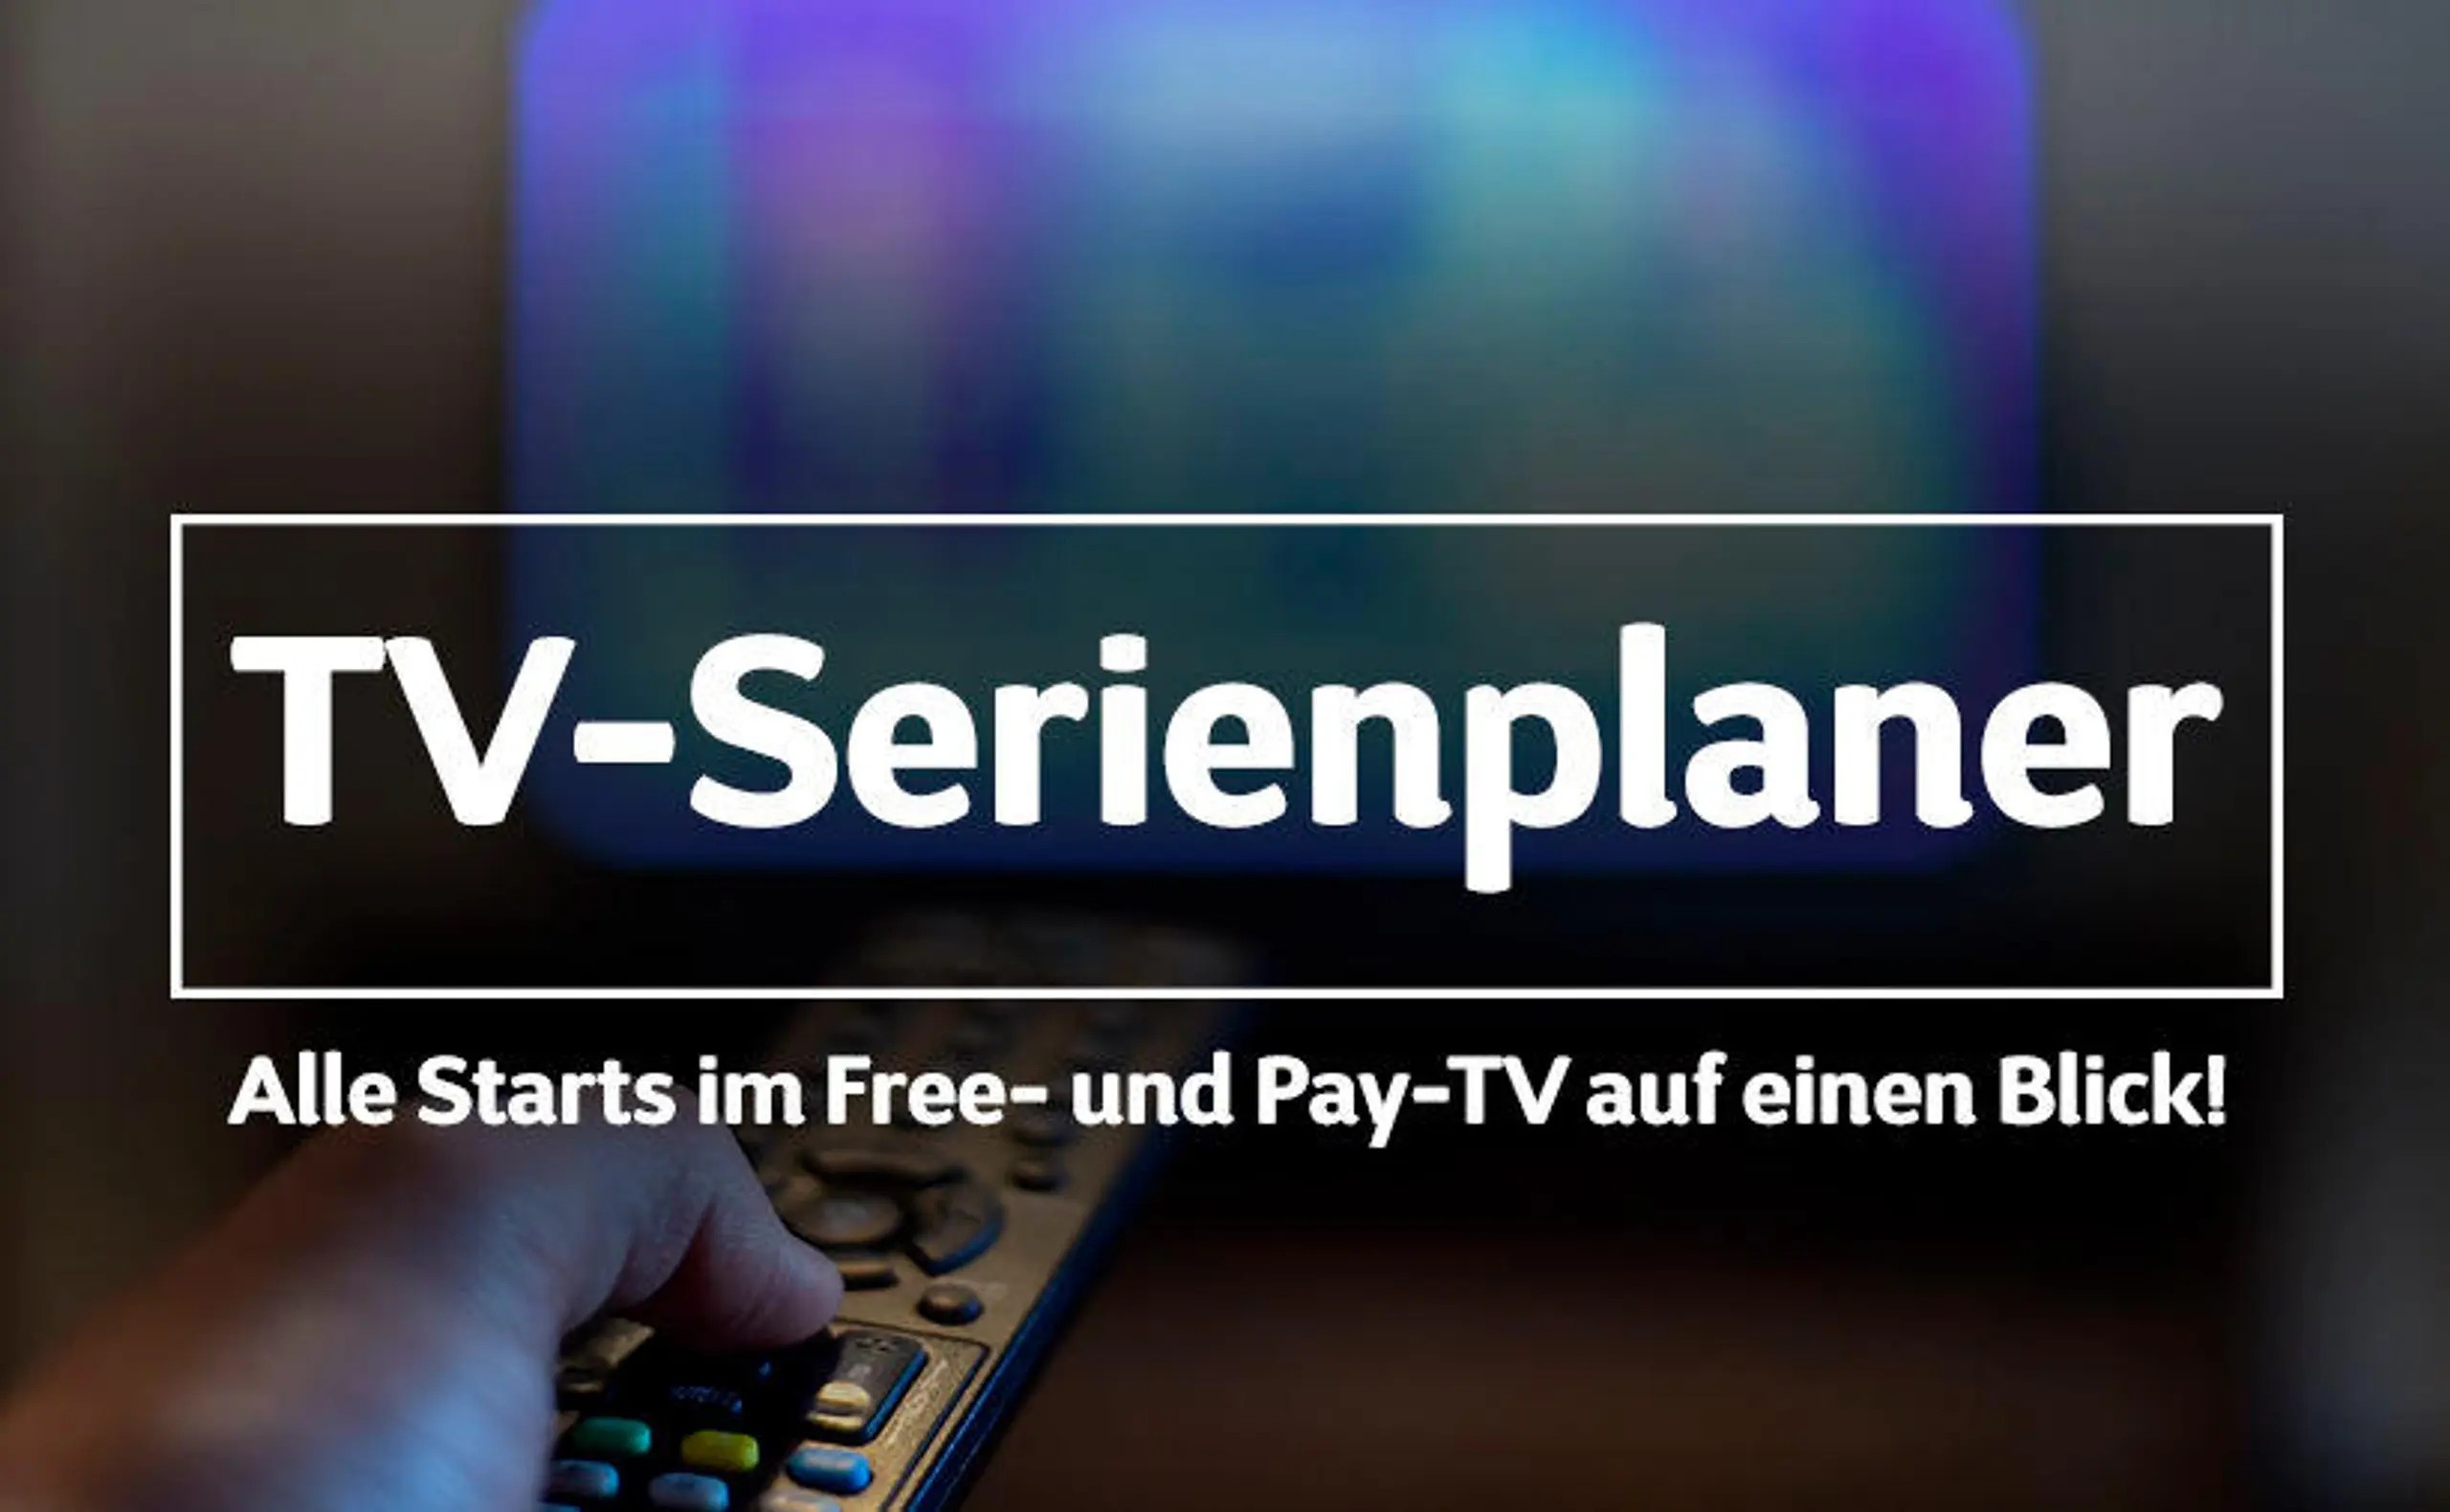 TV-SERIENPLANER: Serienstarts und neue Staffeln im Free-TV und Pay-TV auf einen Blick!